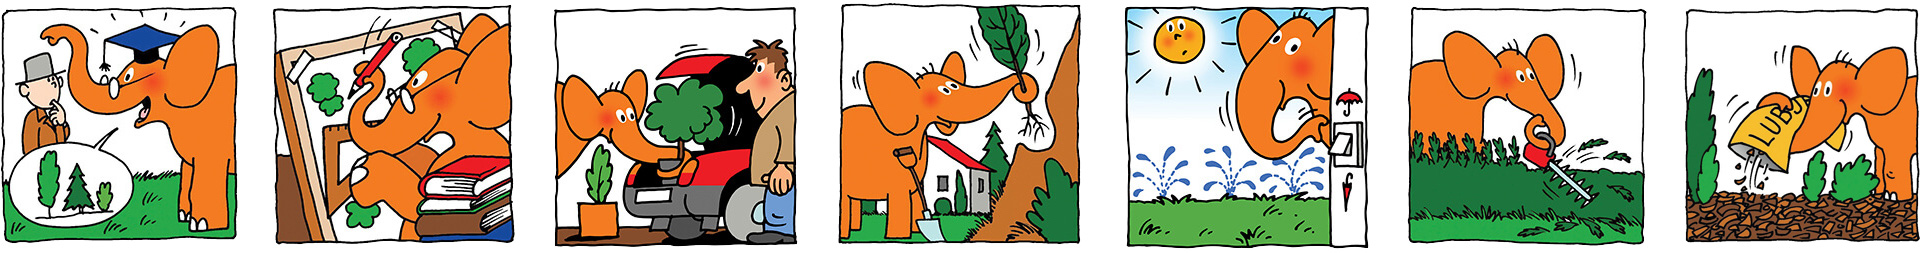 The Story of The Orange Elephant